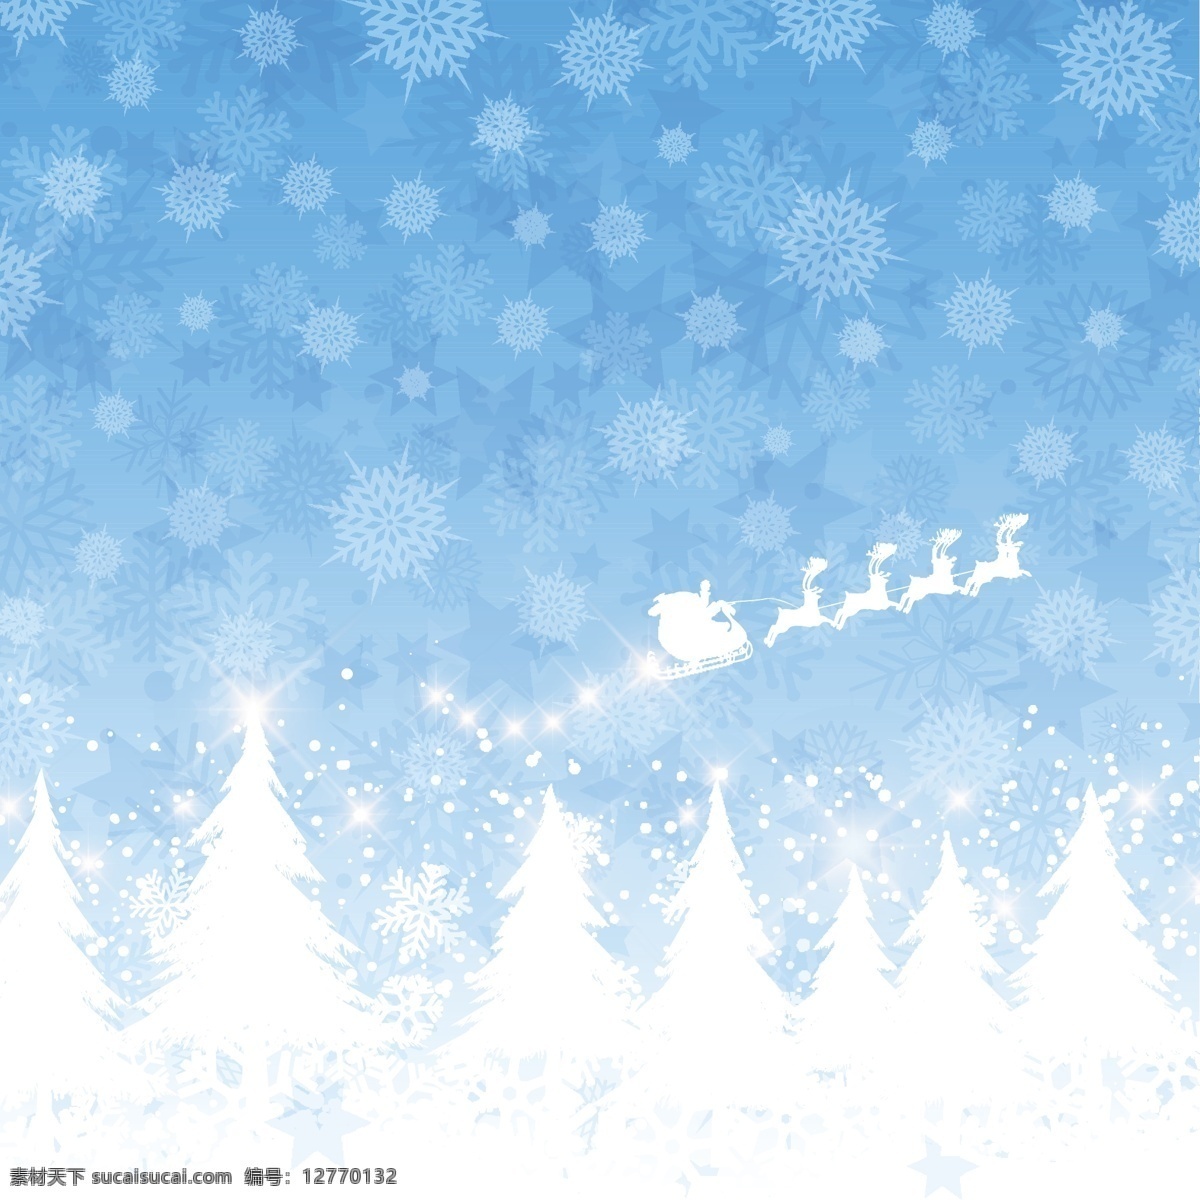 圣诞老人 克劳斯 一个 雪橇 飞行 蓝色 背景 圣诞节 抽象 几何 光 雪 蓝色背景 圣诞快乐 冬天 快乐 圣诞树 星星 圣诞背景 庆祝 雪花 白色